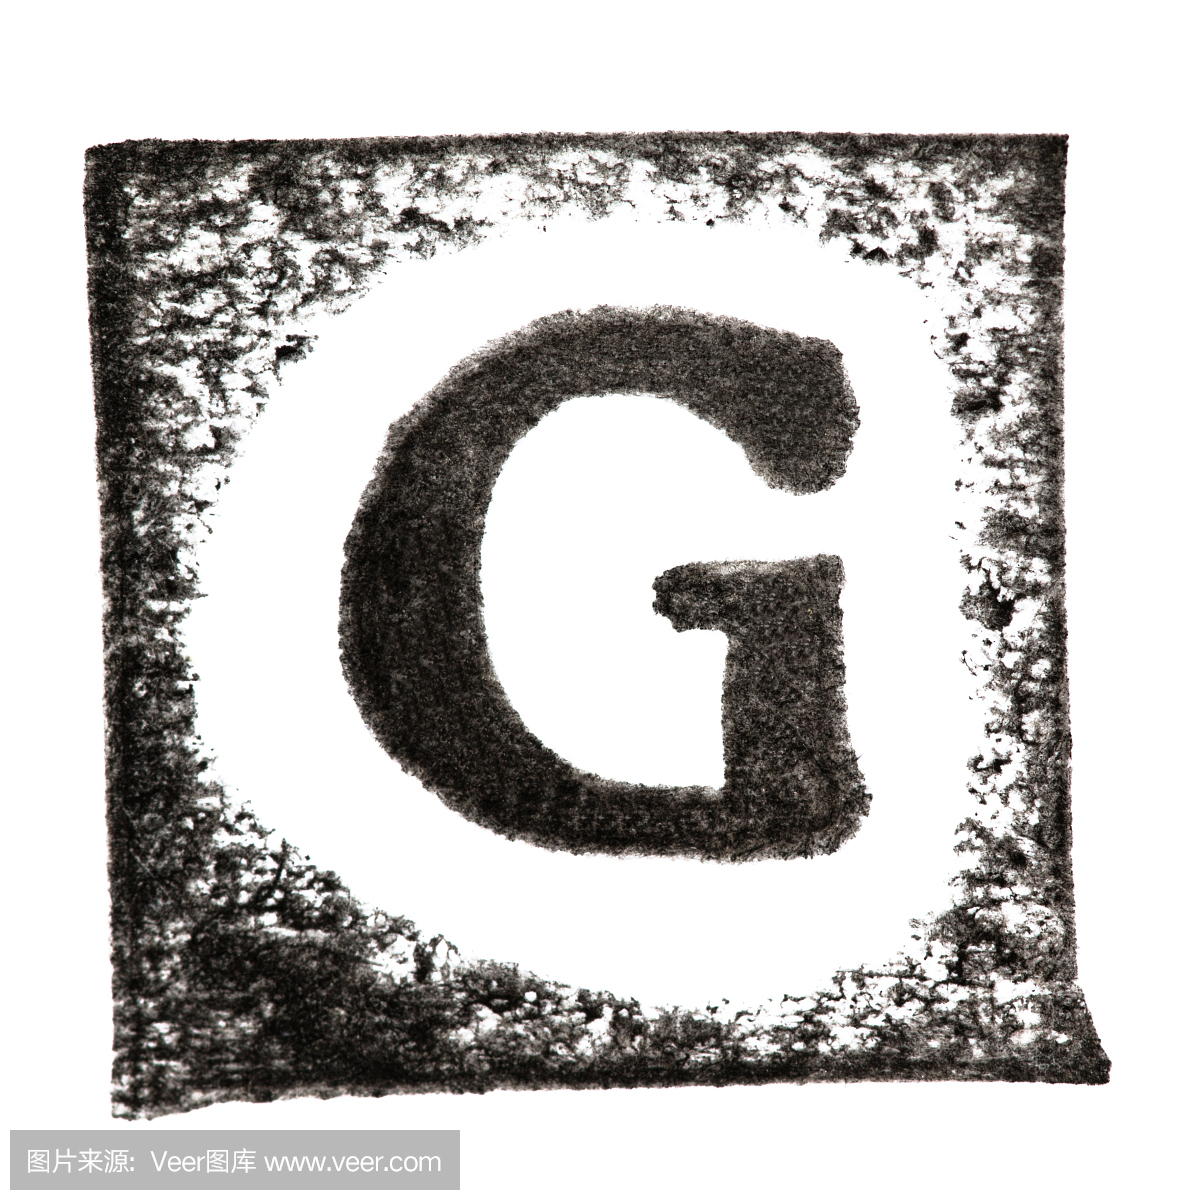 英文大写字母'G'打印孤立在白色背景上的黑色